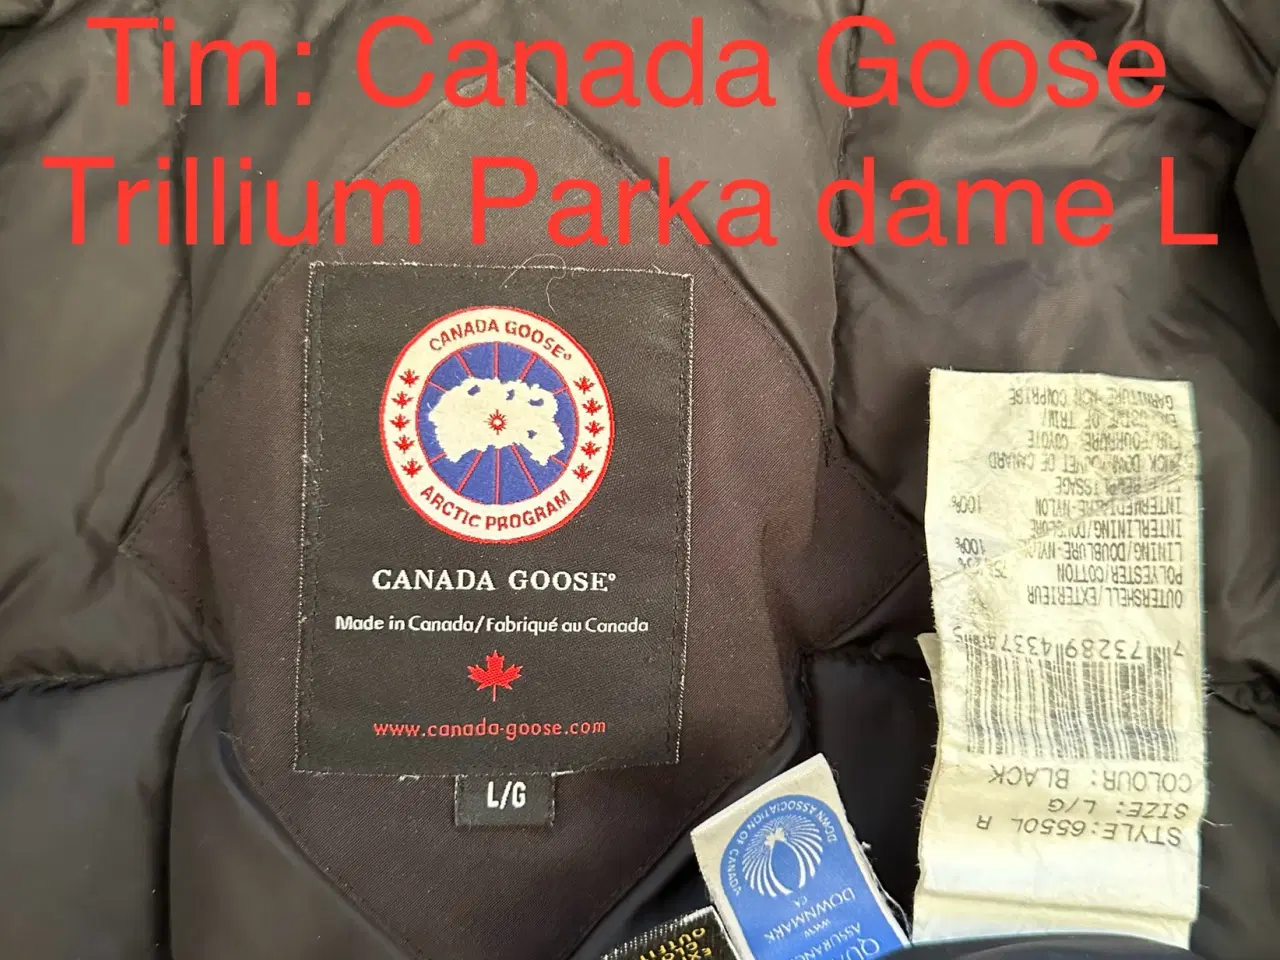 Billede 8 - Canada Goose Trillium Parka dame L 